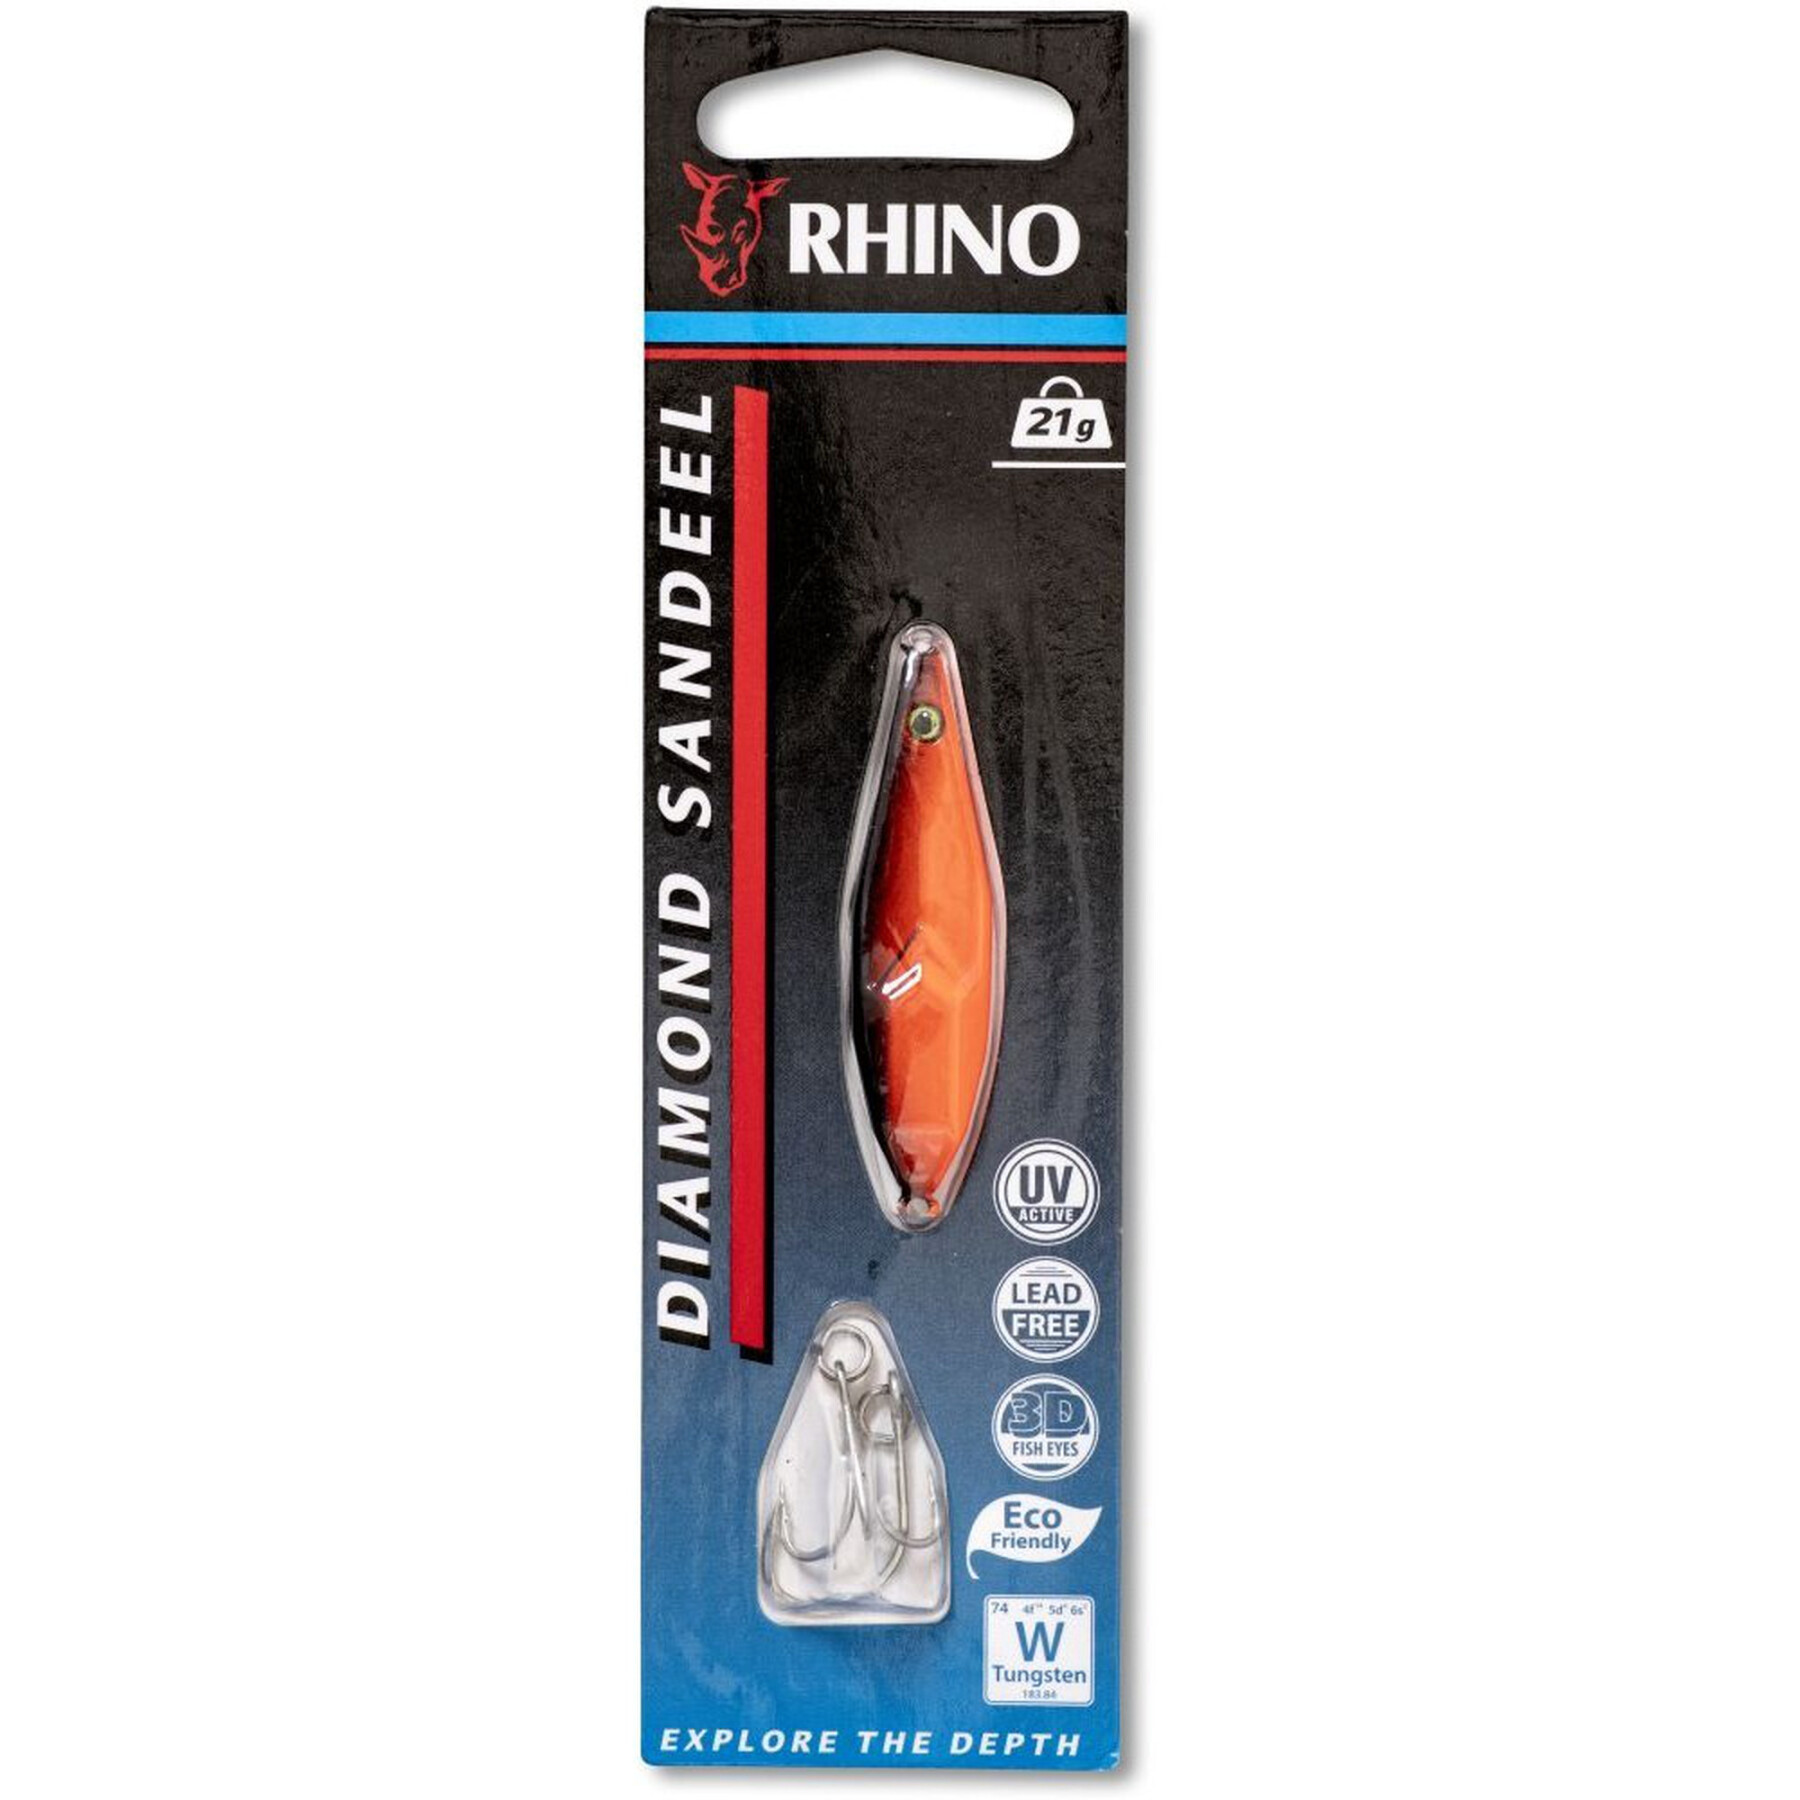 Esca Rhino Diamond Sandeel – 21g